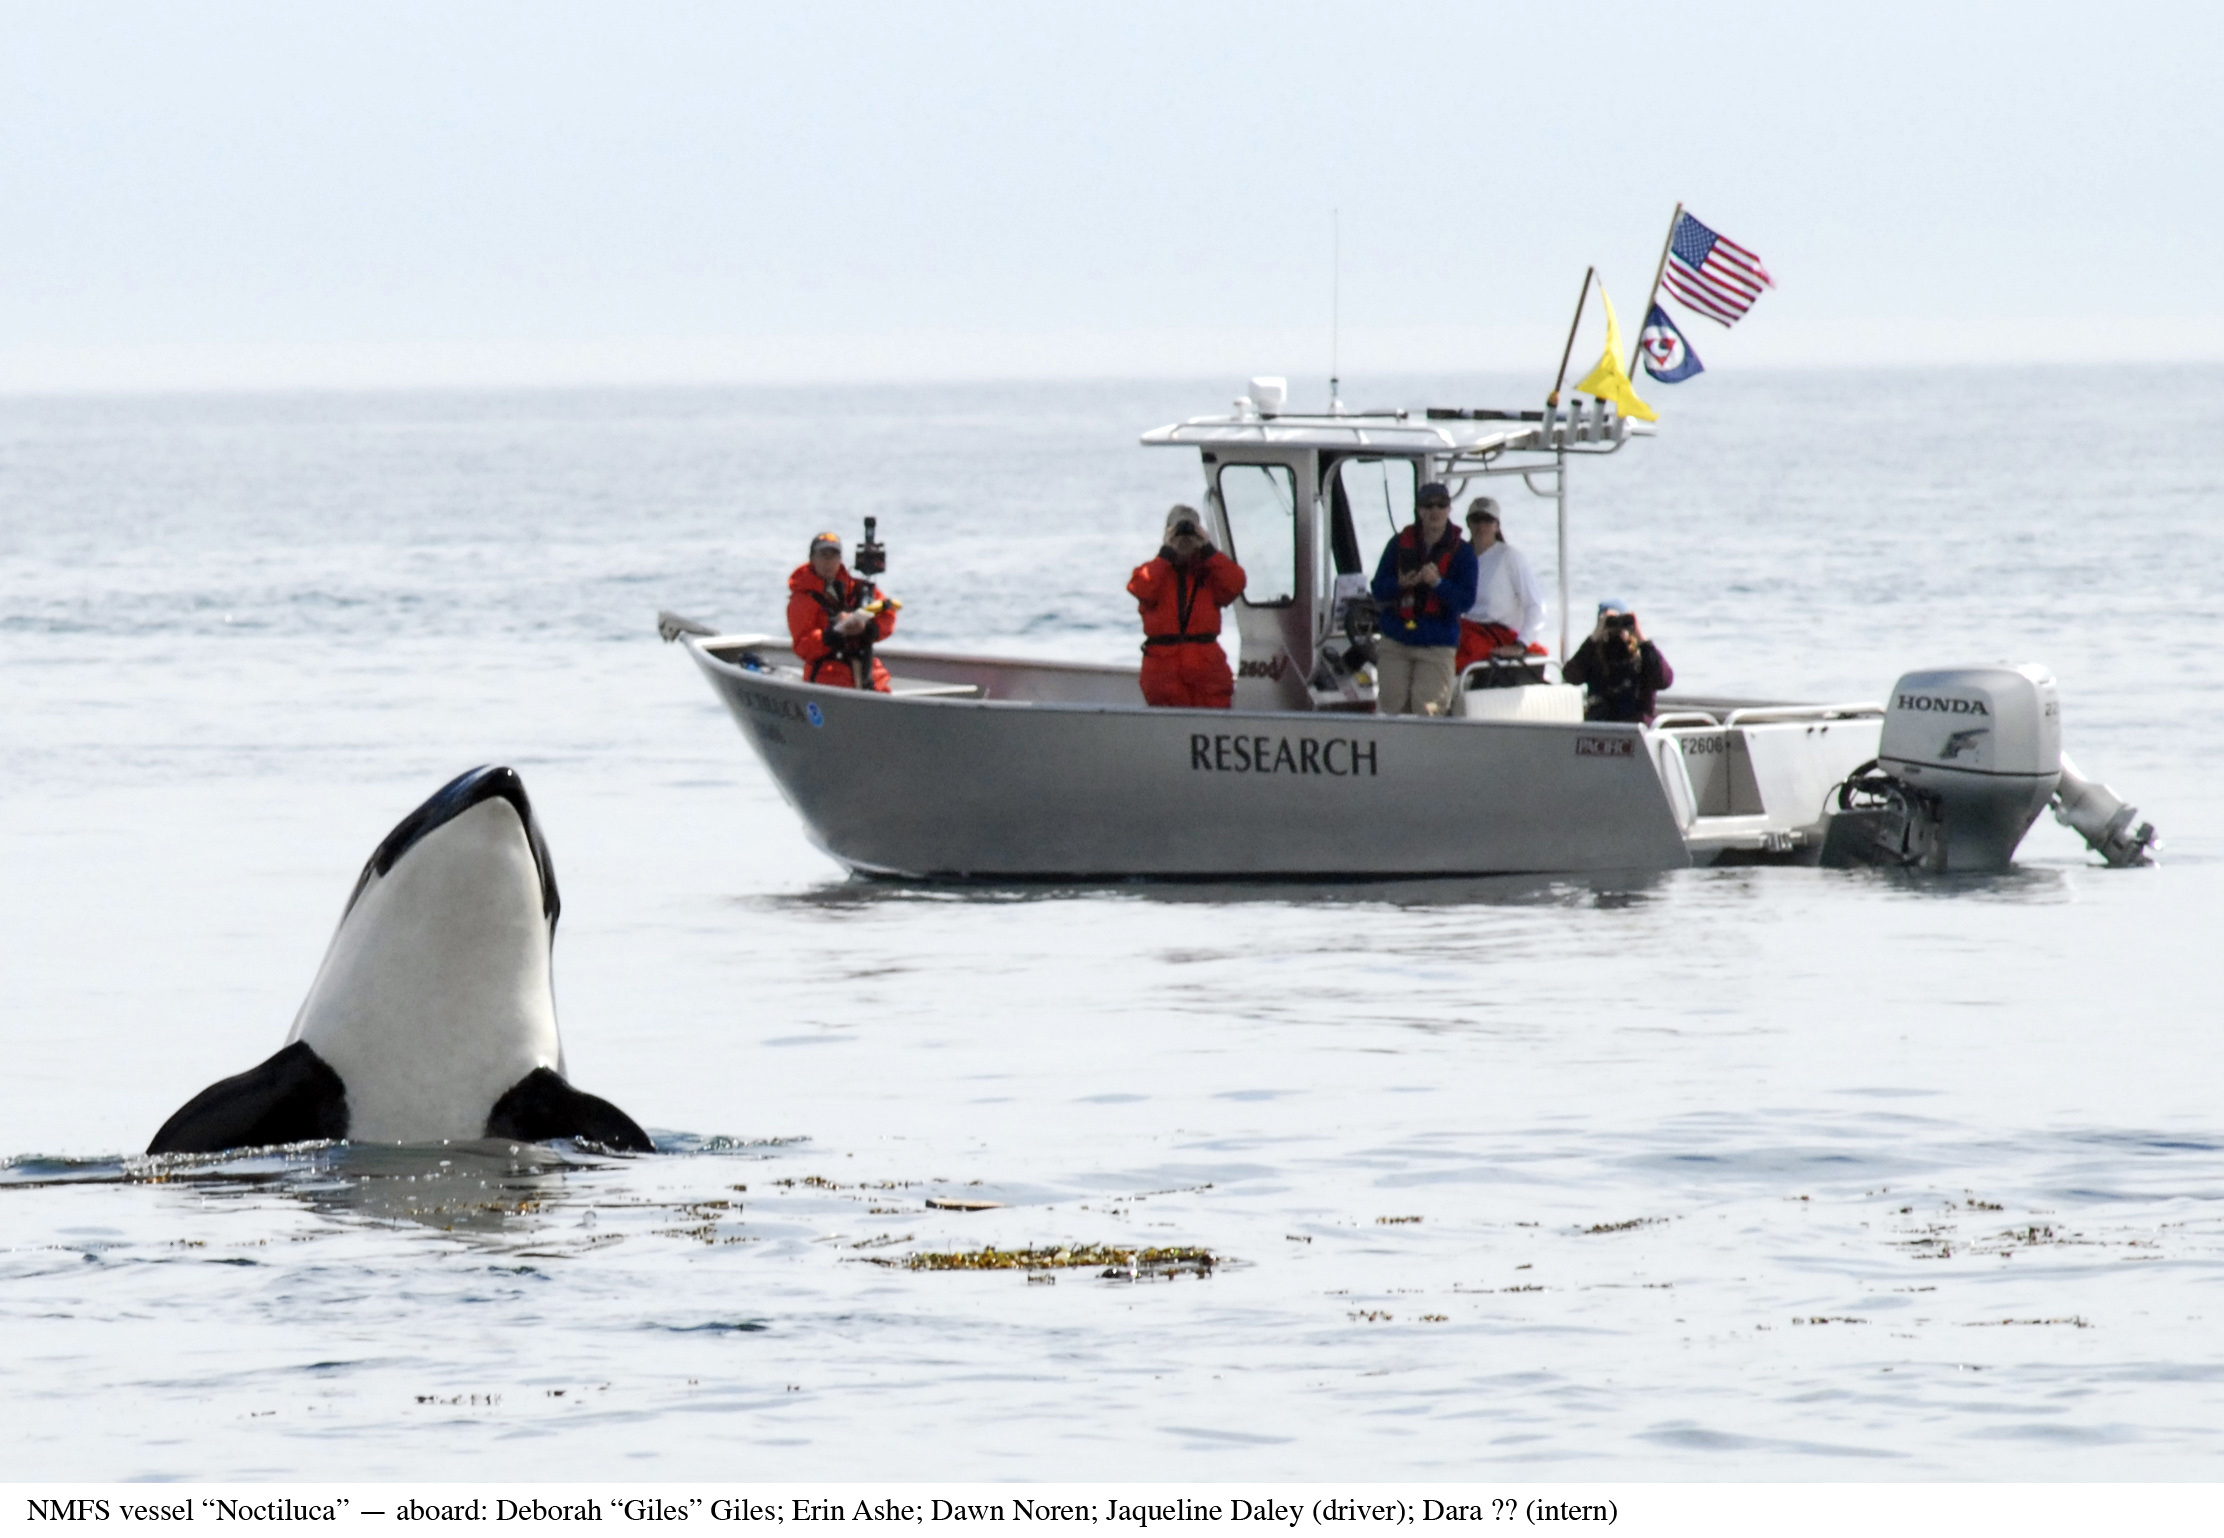 Colombie Britannique – Une naissance observée chez les orques en danger d’extinction de Puget Sound